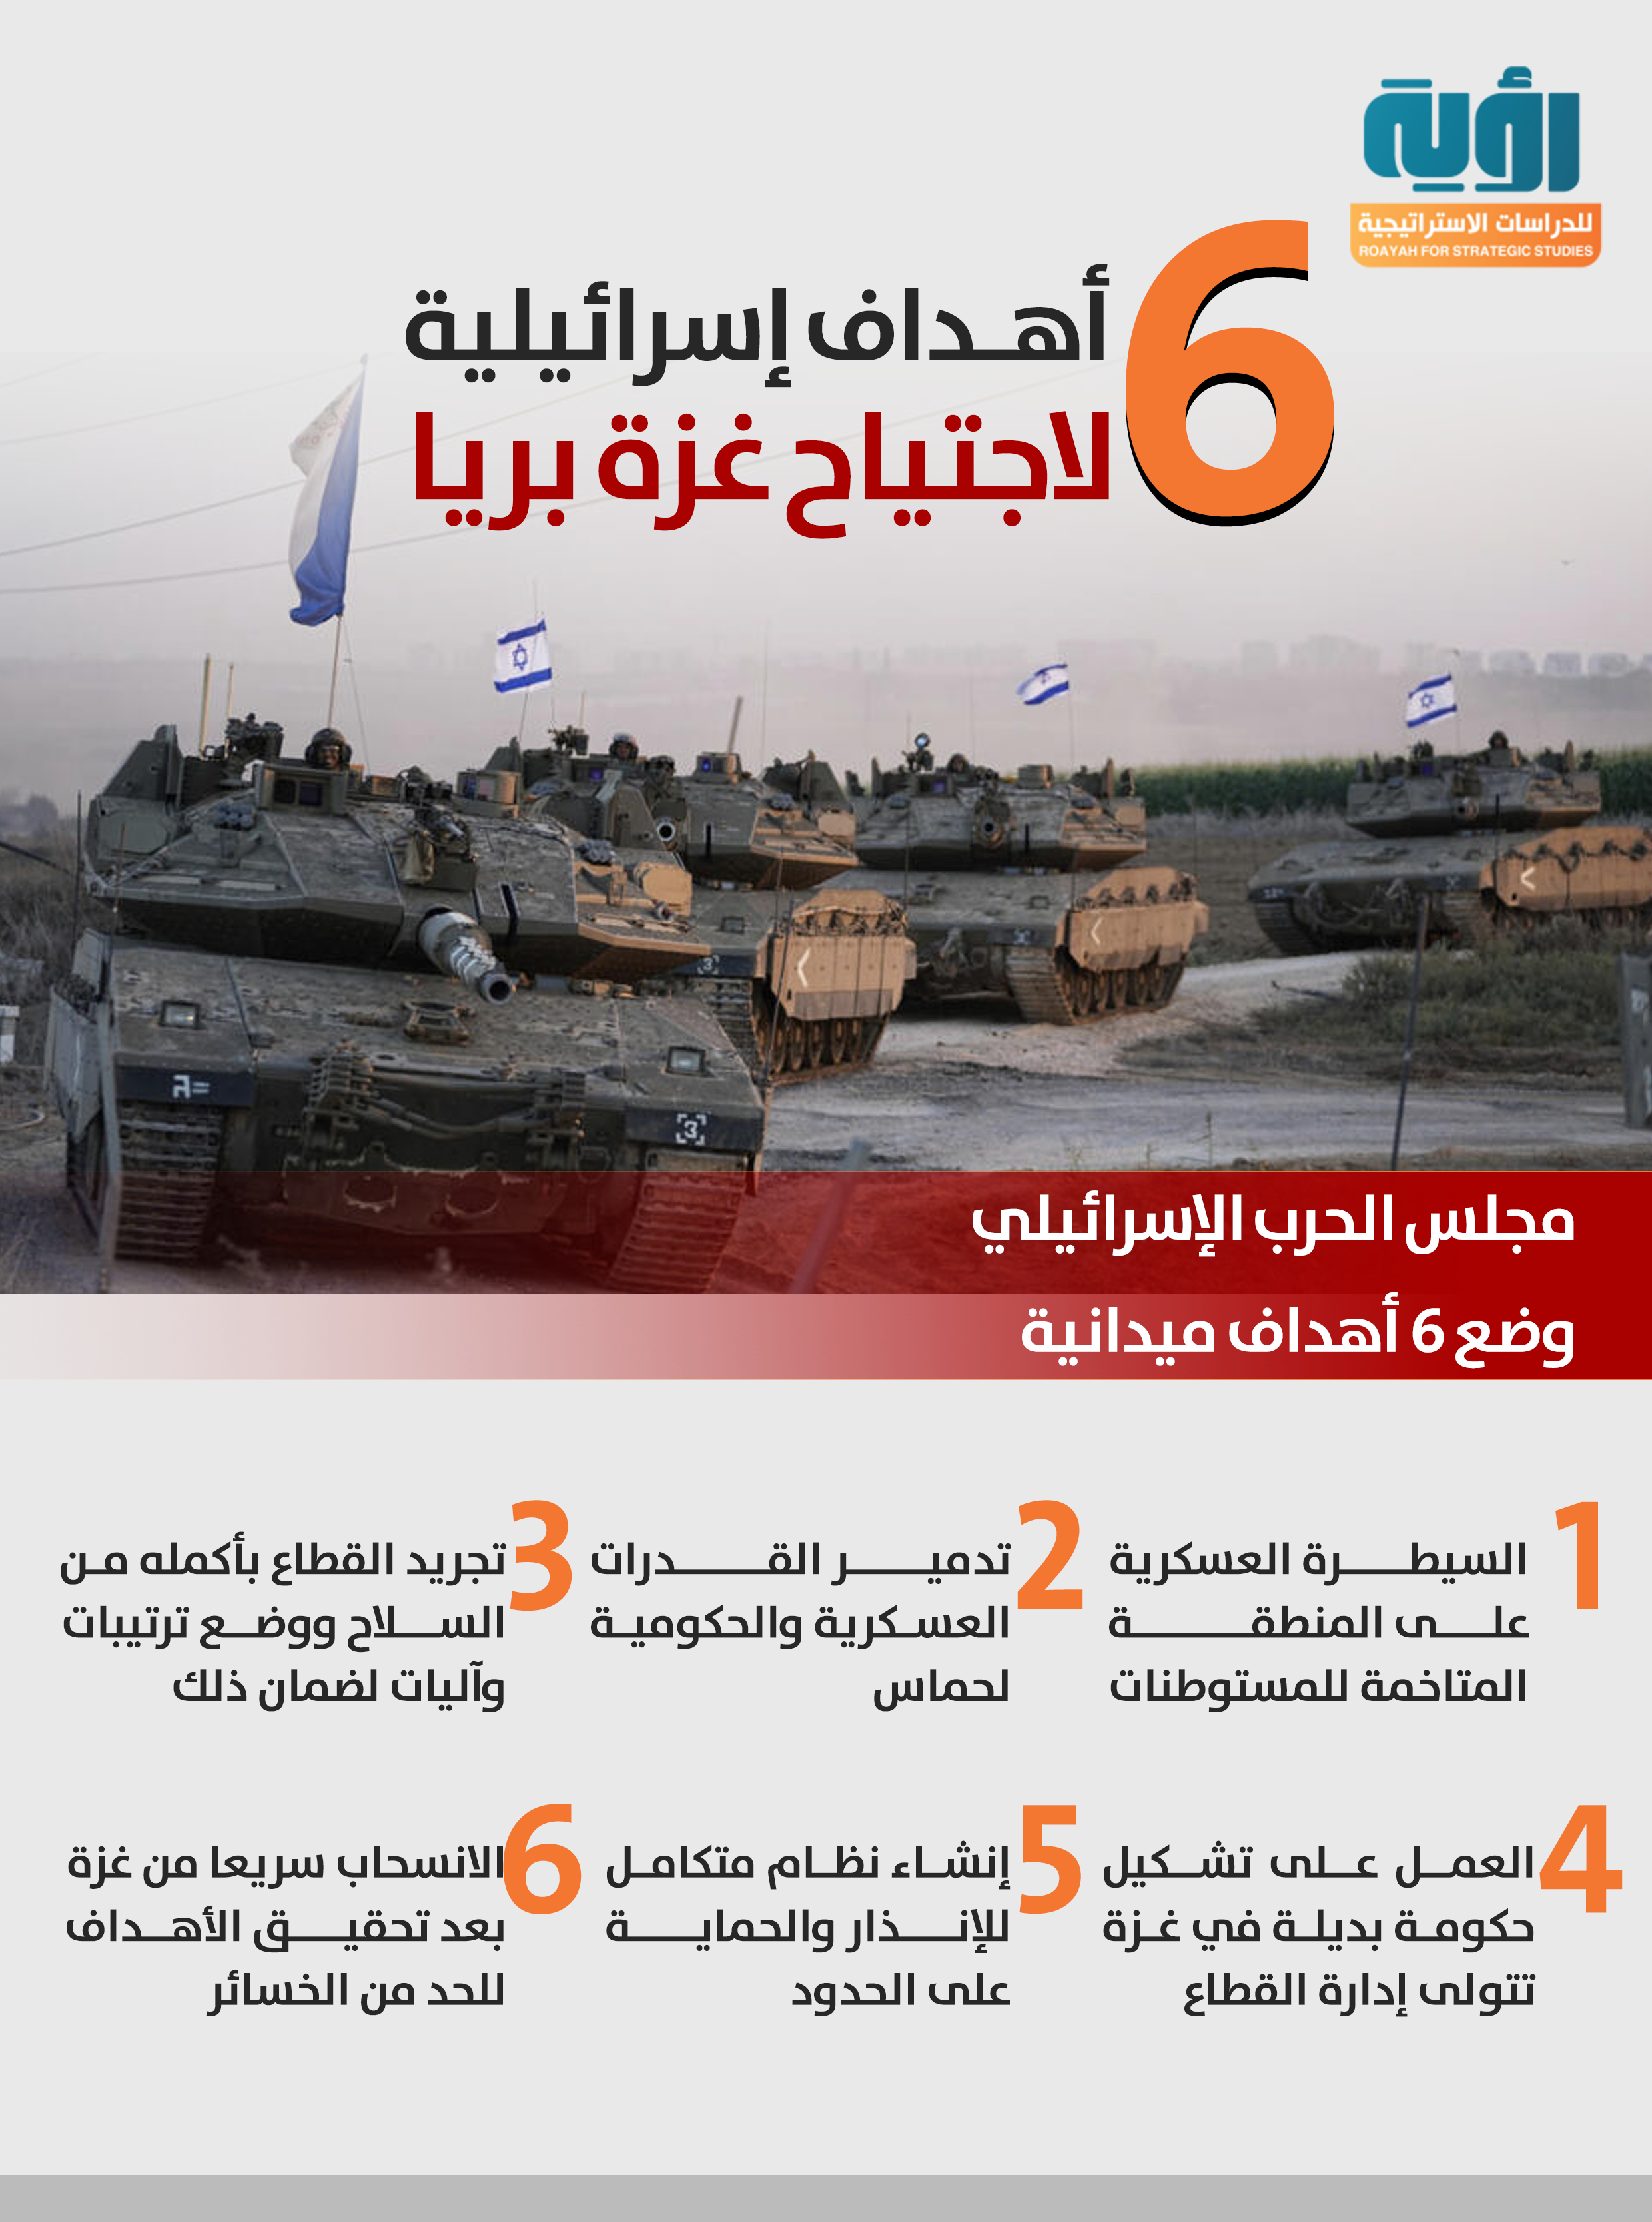 6 أهداف إسرائيلية لاجتياح غزة بريا